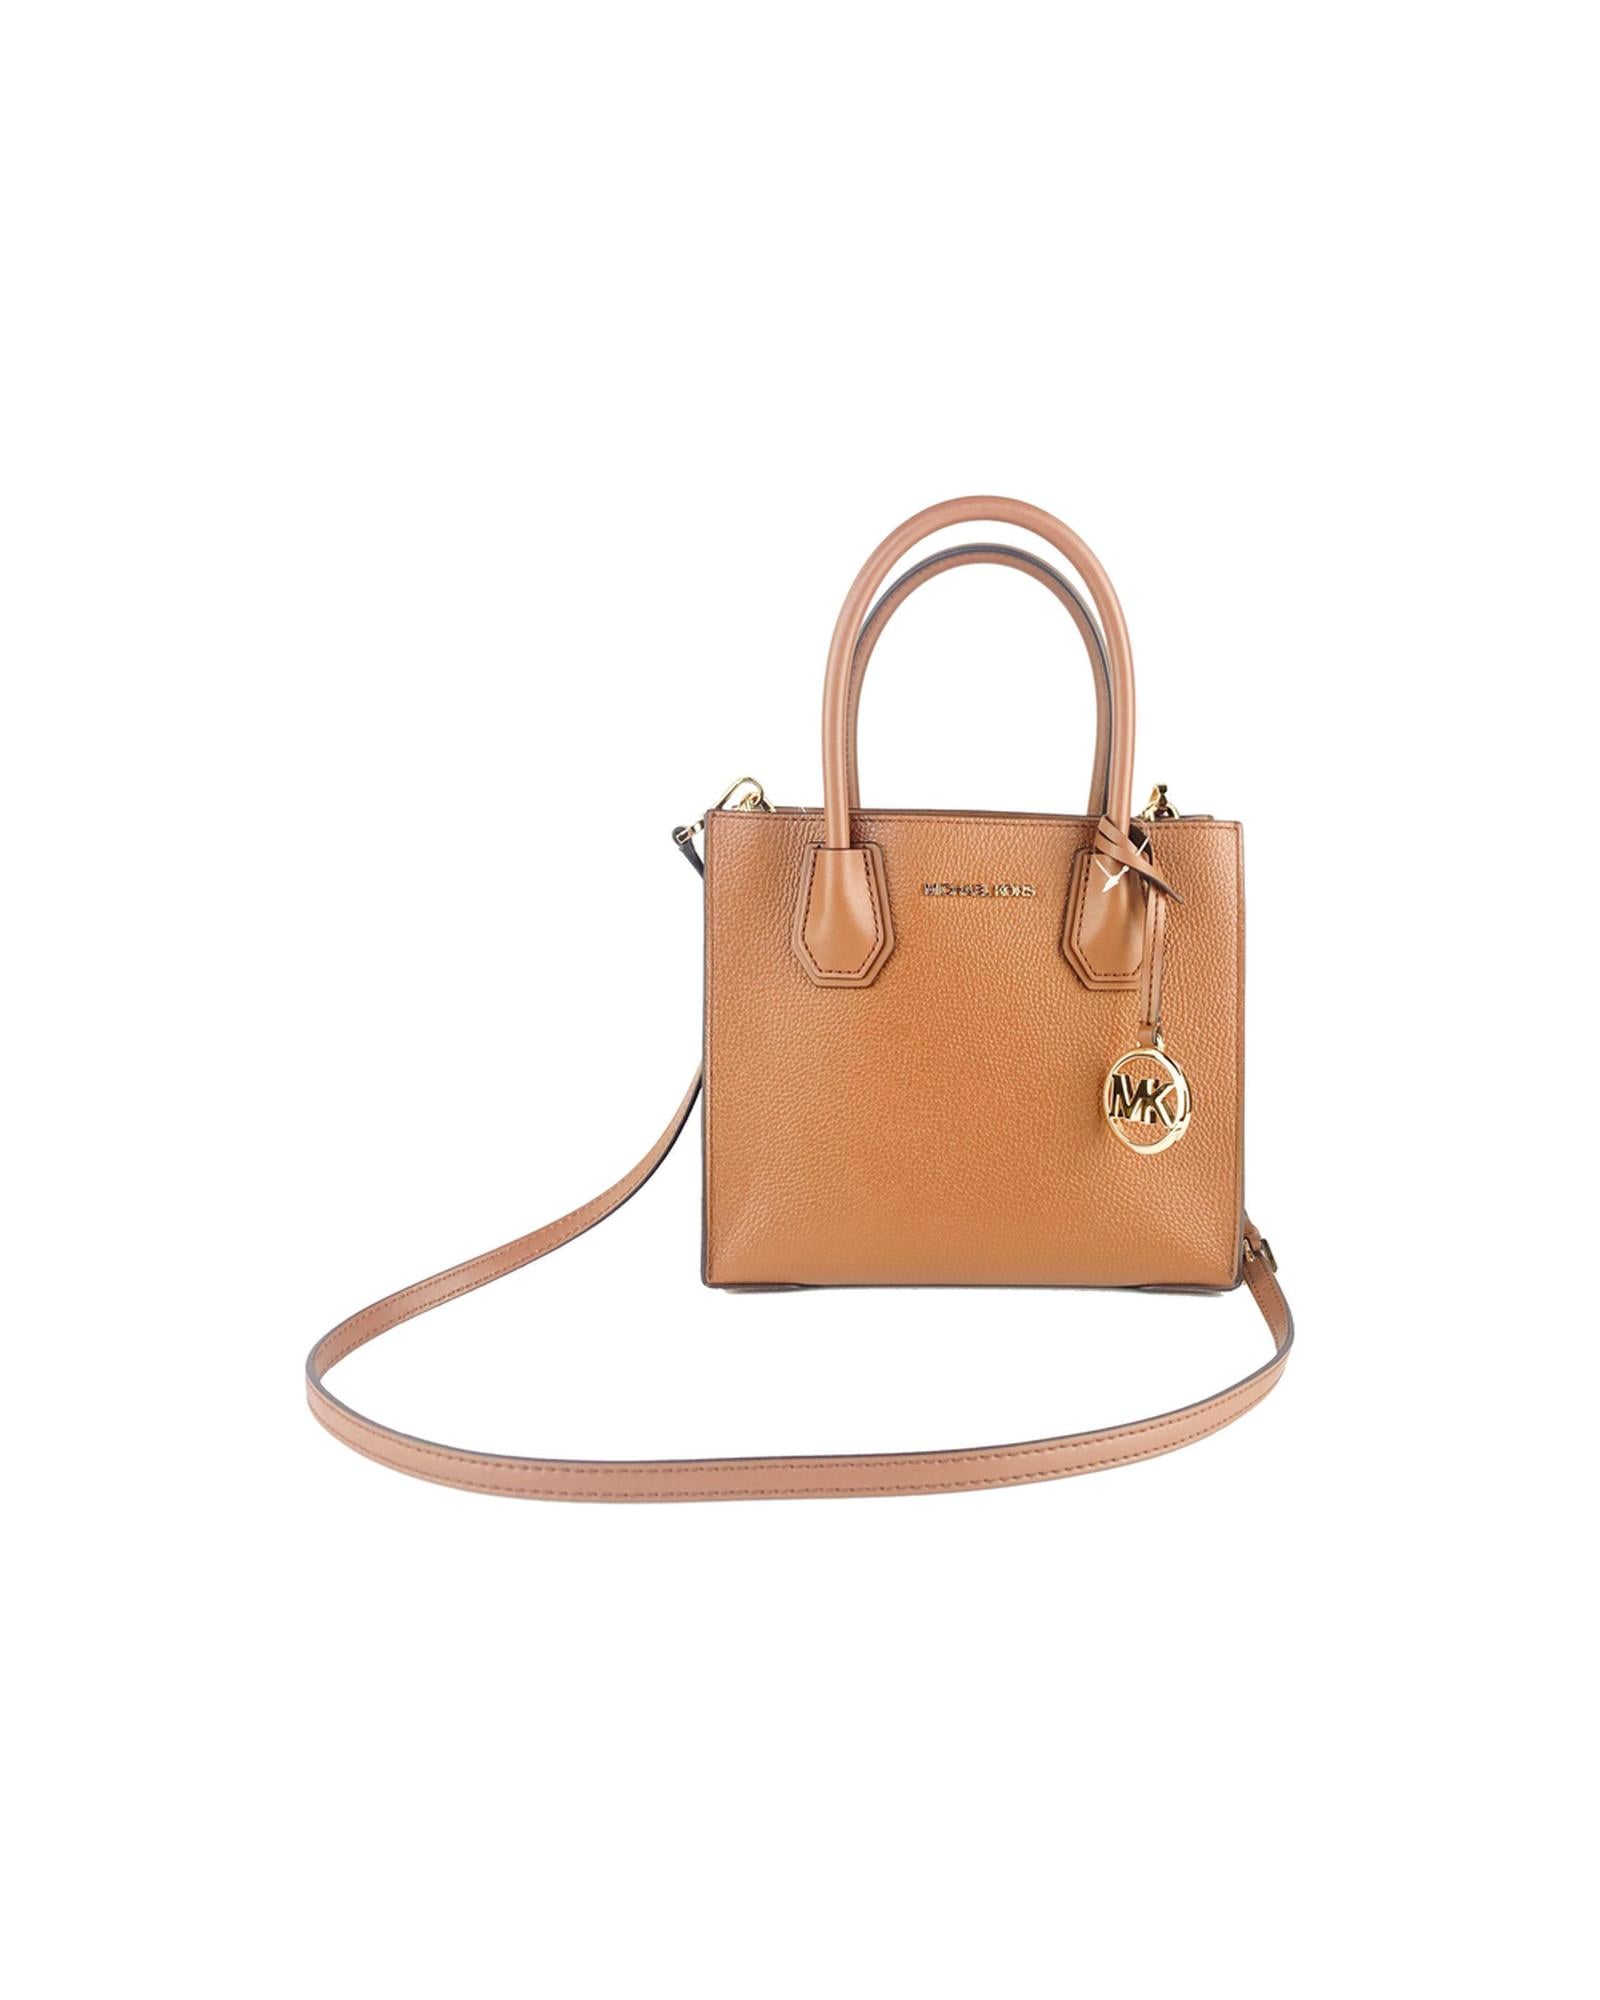 Michael Kors Mercer Medium Messenger Bag in Pebbled Leather One Size Women